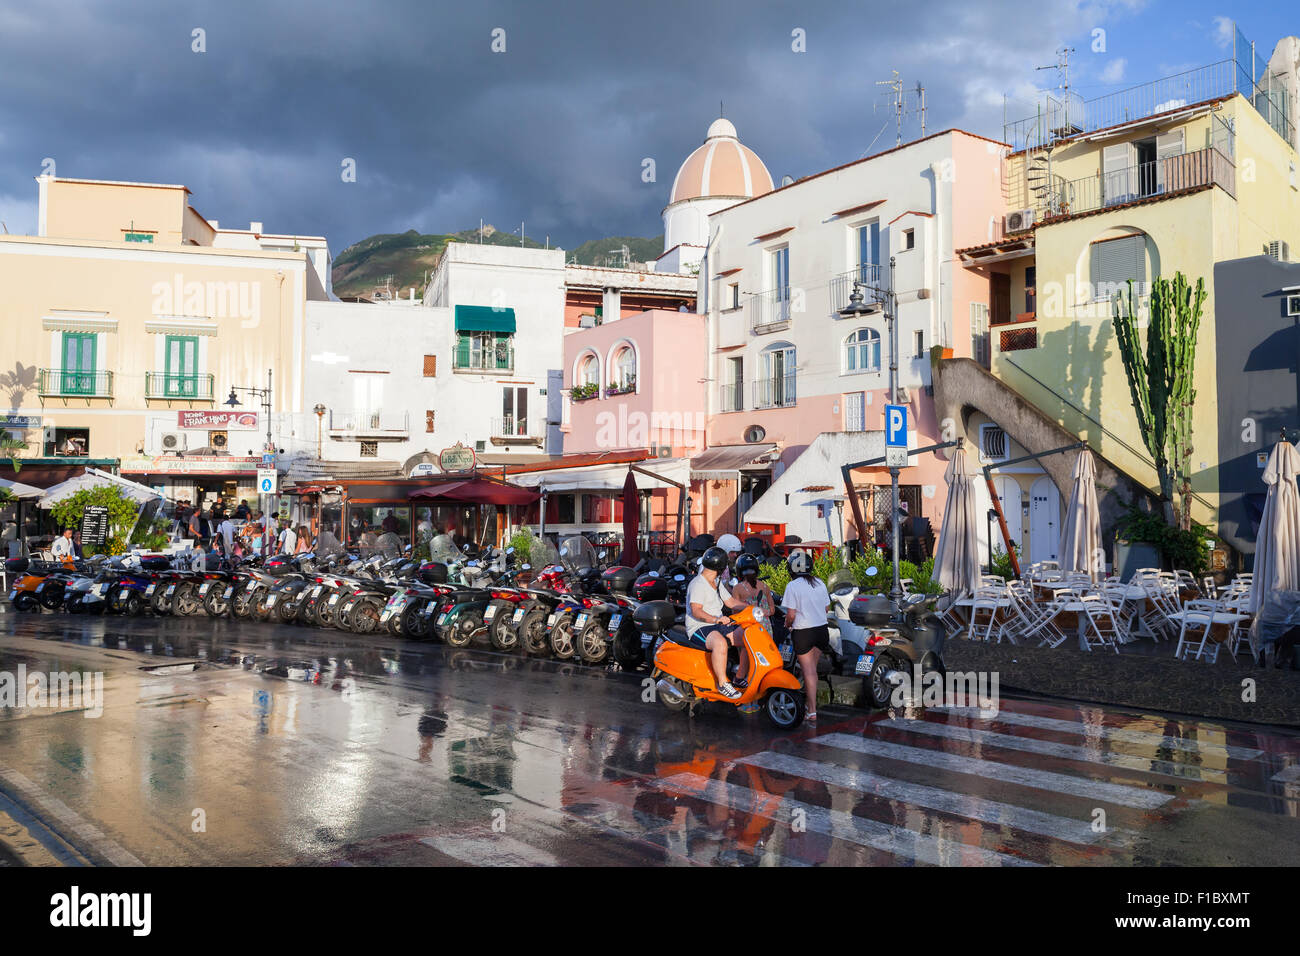 Forio, Italien - 16. August 2015: Nasse Straße nach dem Regen mit geparkten Roller am Straßenrand. Forio, Ischia Stockfoto